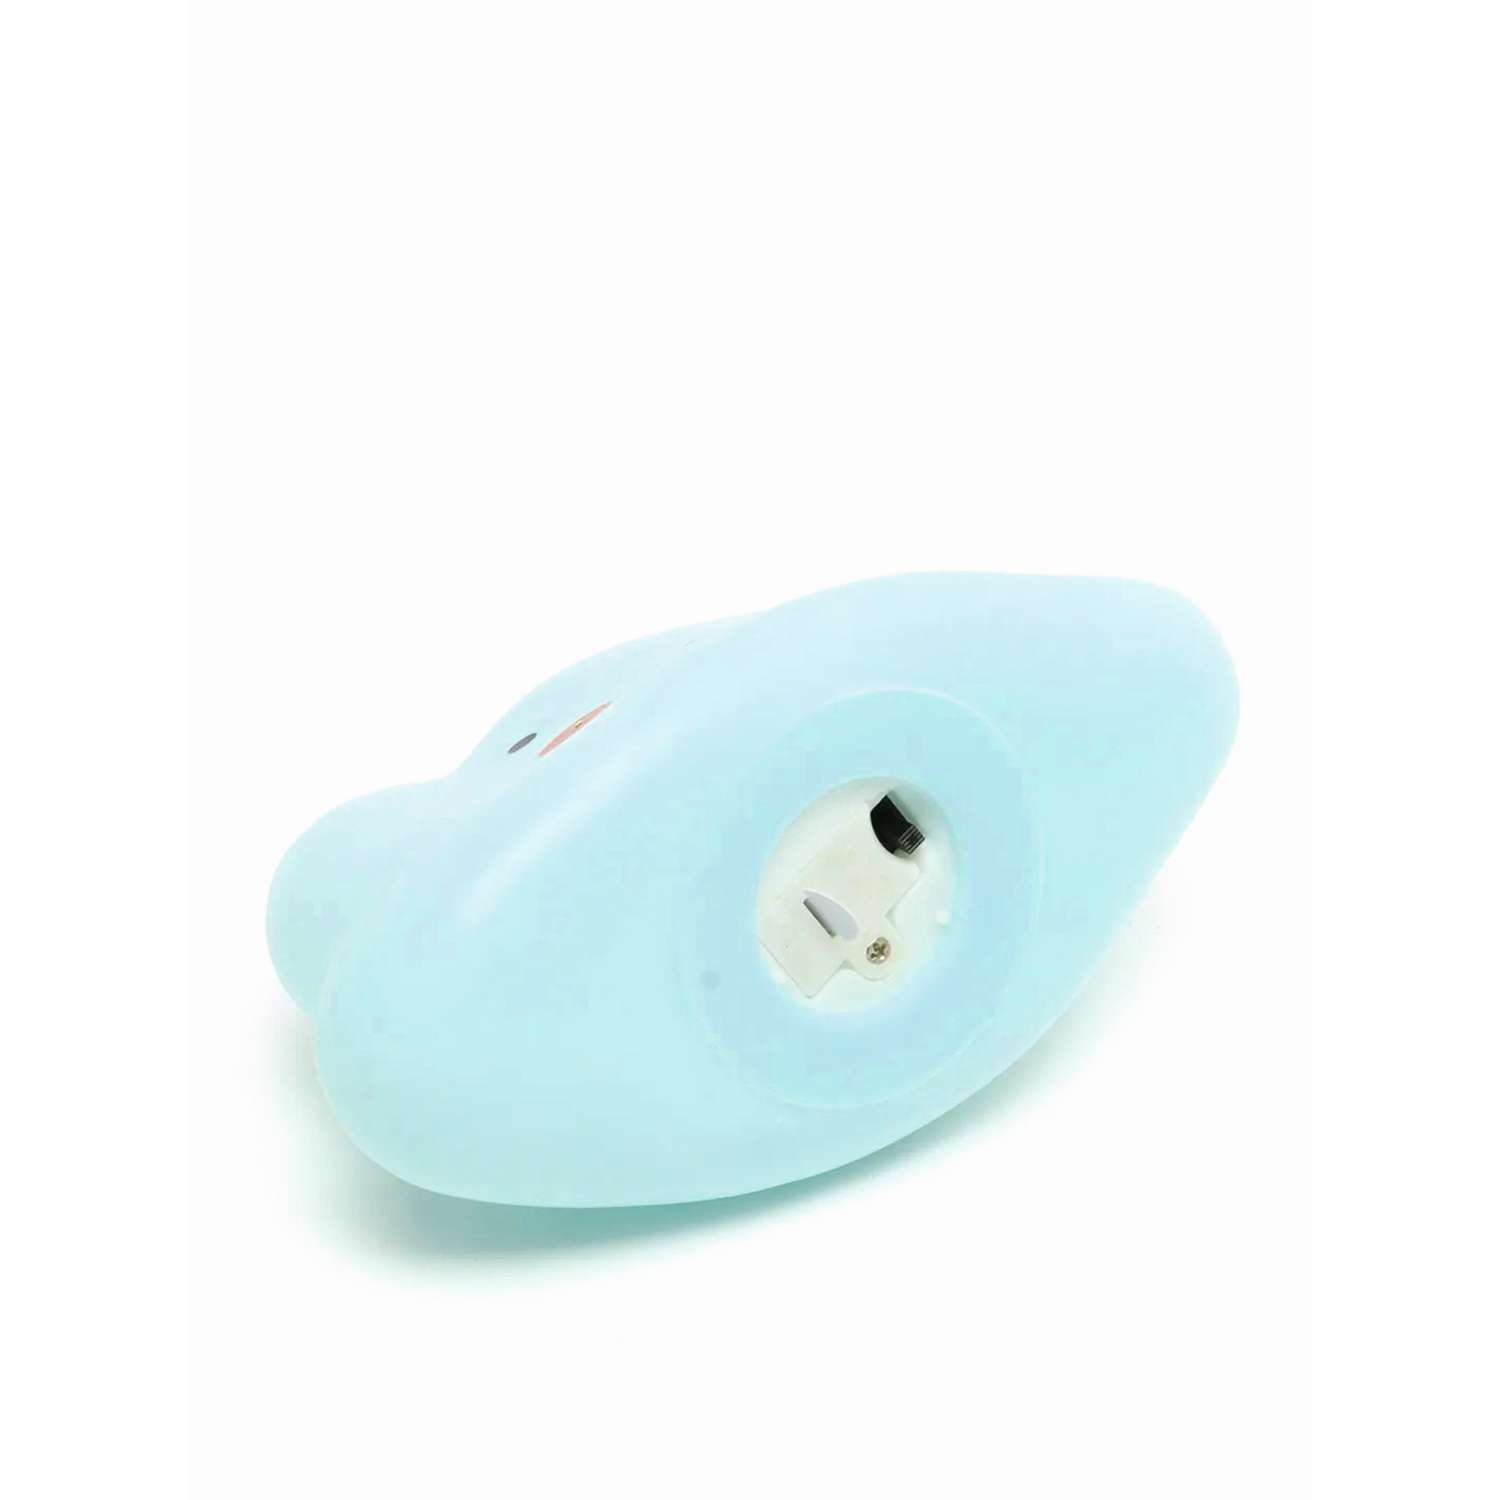 Лампа настольная светодиодная LATS ночник детский облако голубое - фото 15